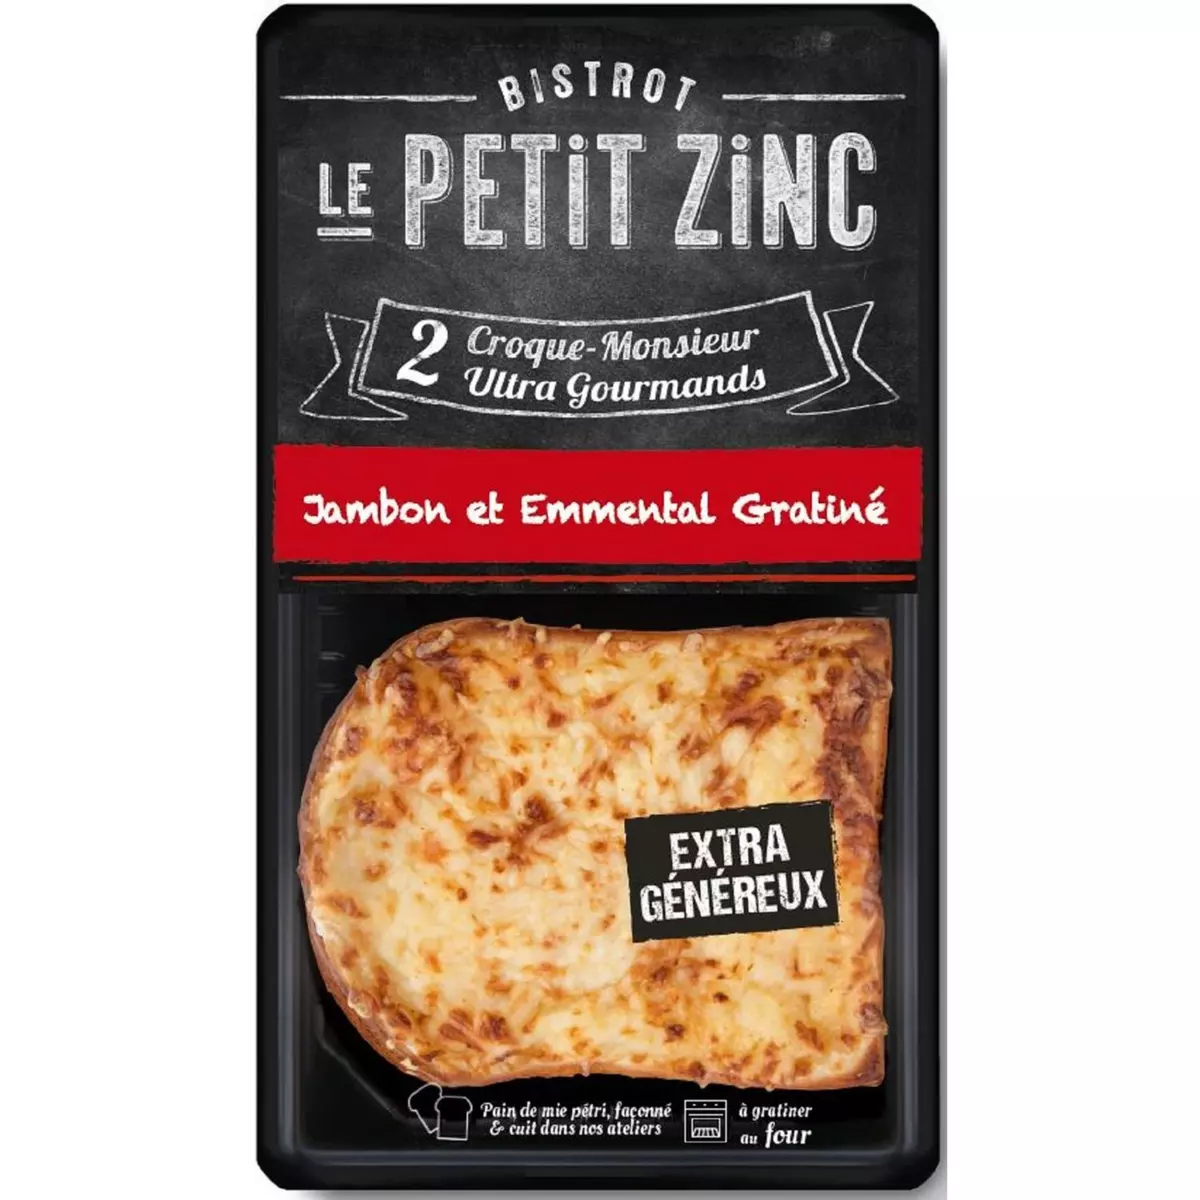 LE PETIT ZINC Croque-monsieur au jambon et emmental gratiné 2 pièces 280g